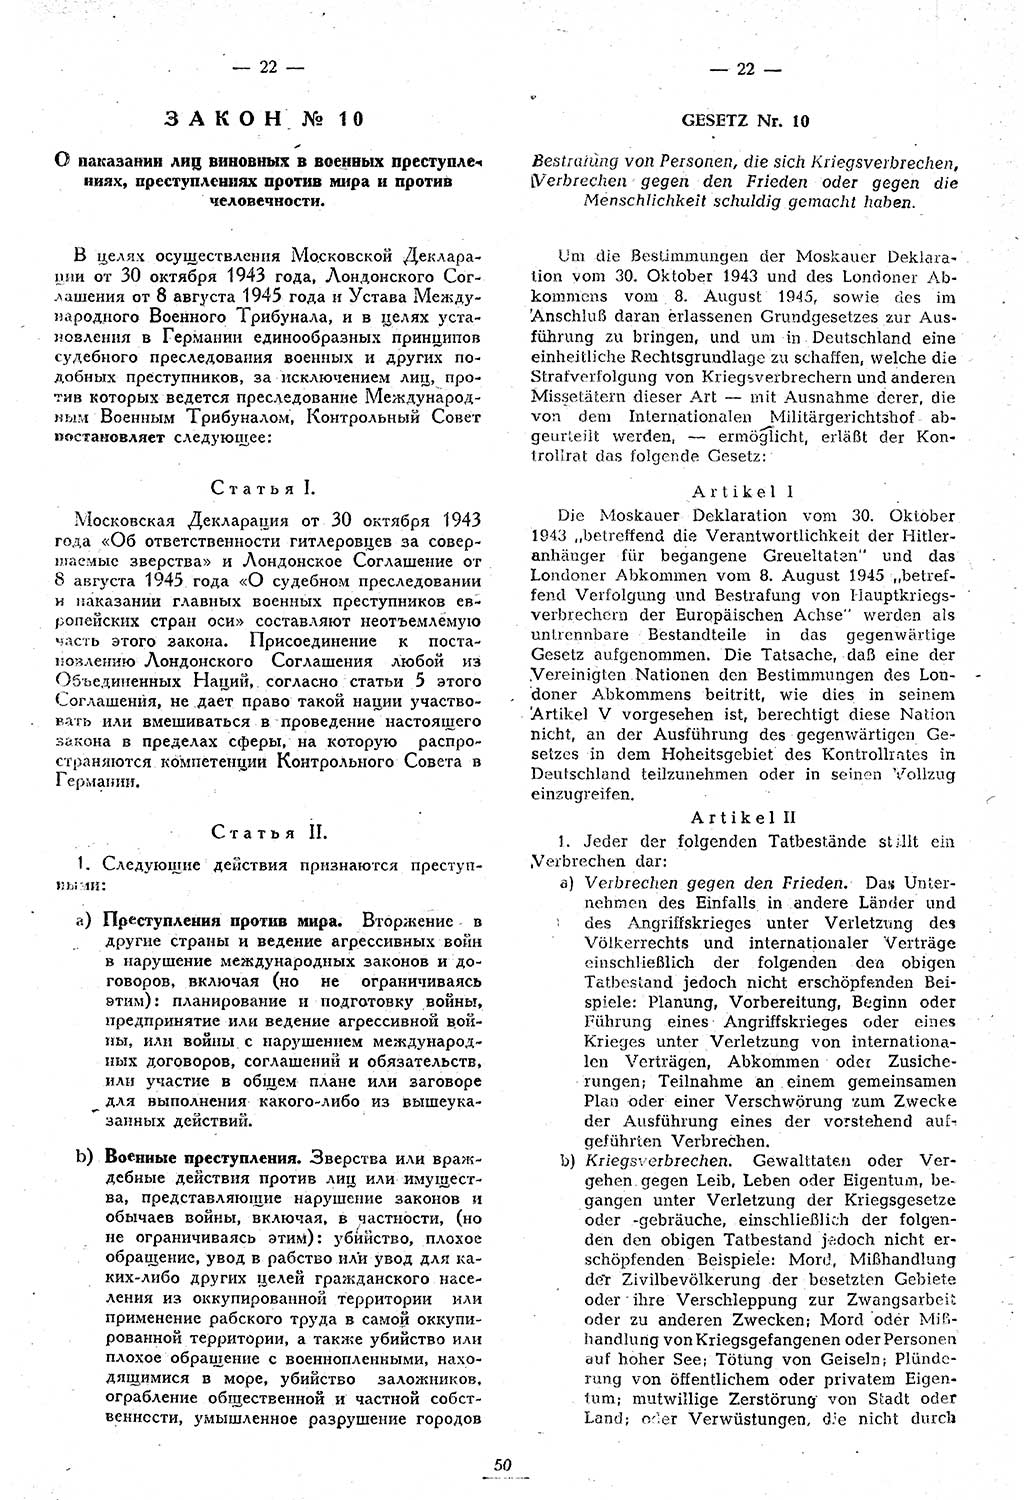 Amtsblatt des Kontrollrats (ABlKR) in Deutschland 1946, Seite 50/2 (ABlKR Dtl. 1946, S. 50/2)